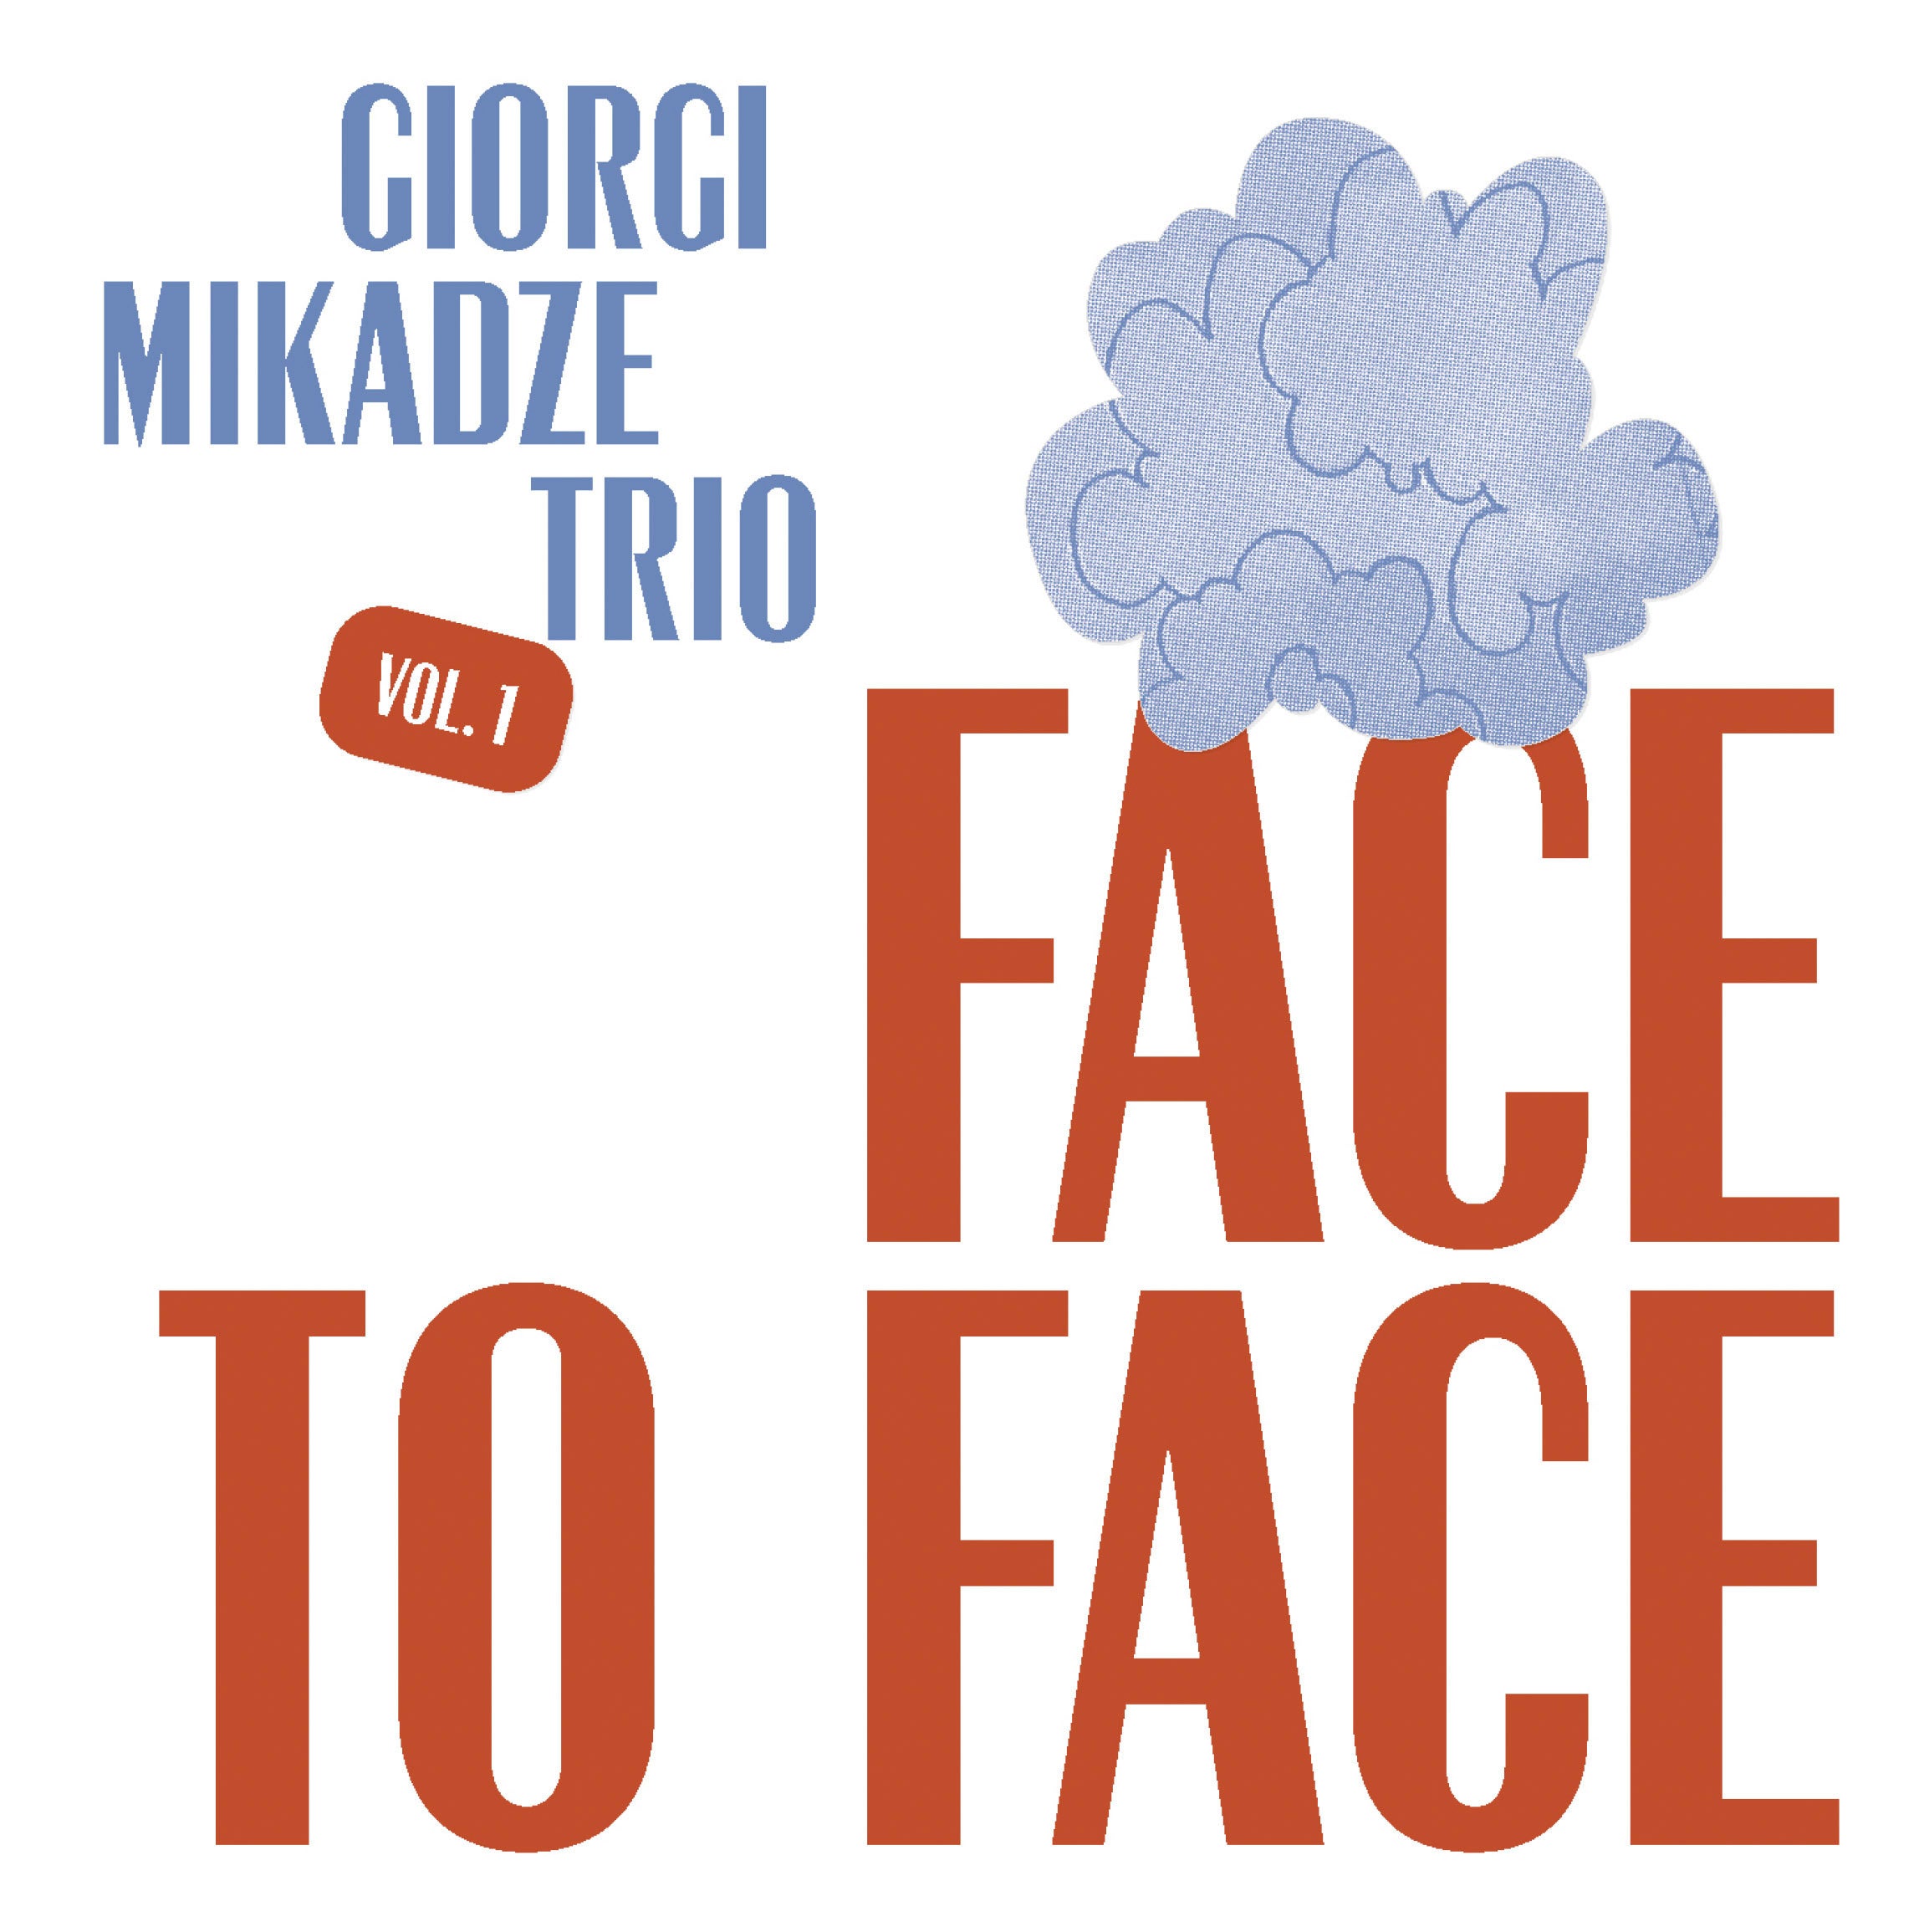 Music Review - Giorgi Mikadze Trio